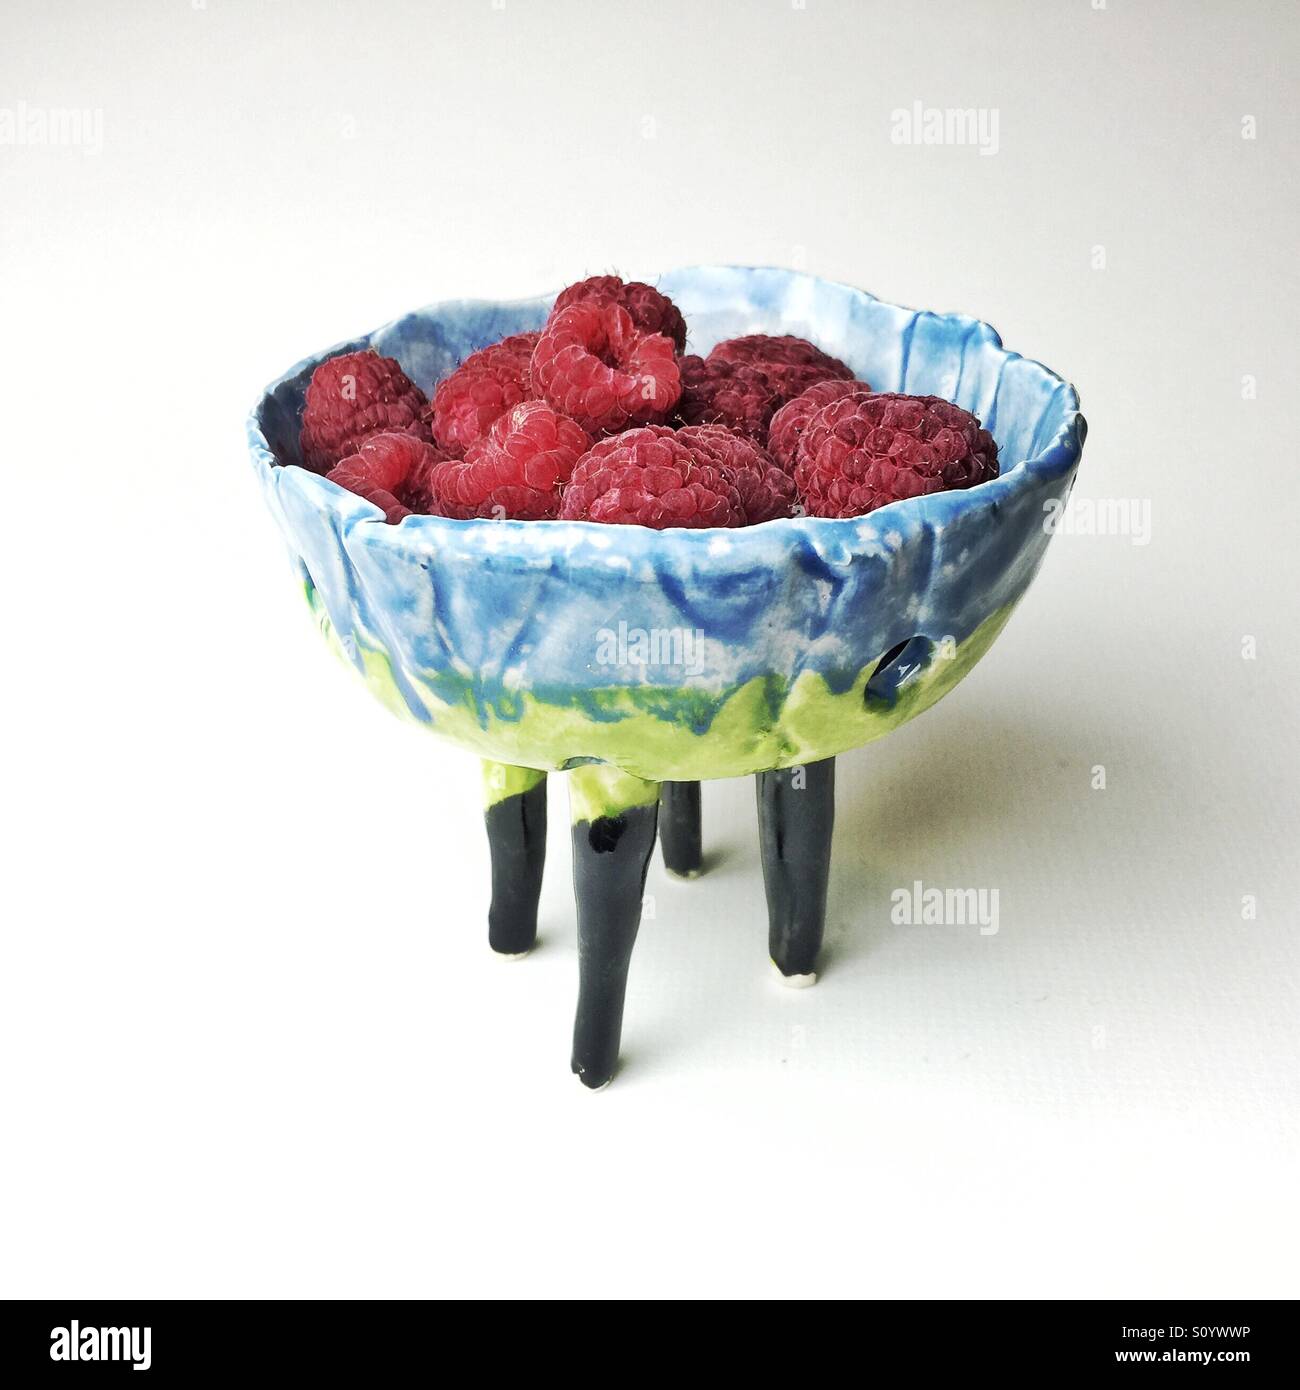 handmade ceramic berry bowl with fresh raspberries Stock Photo